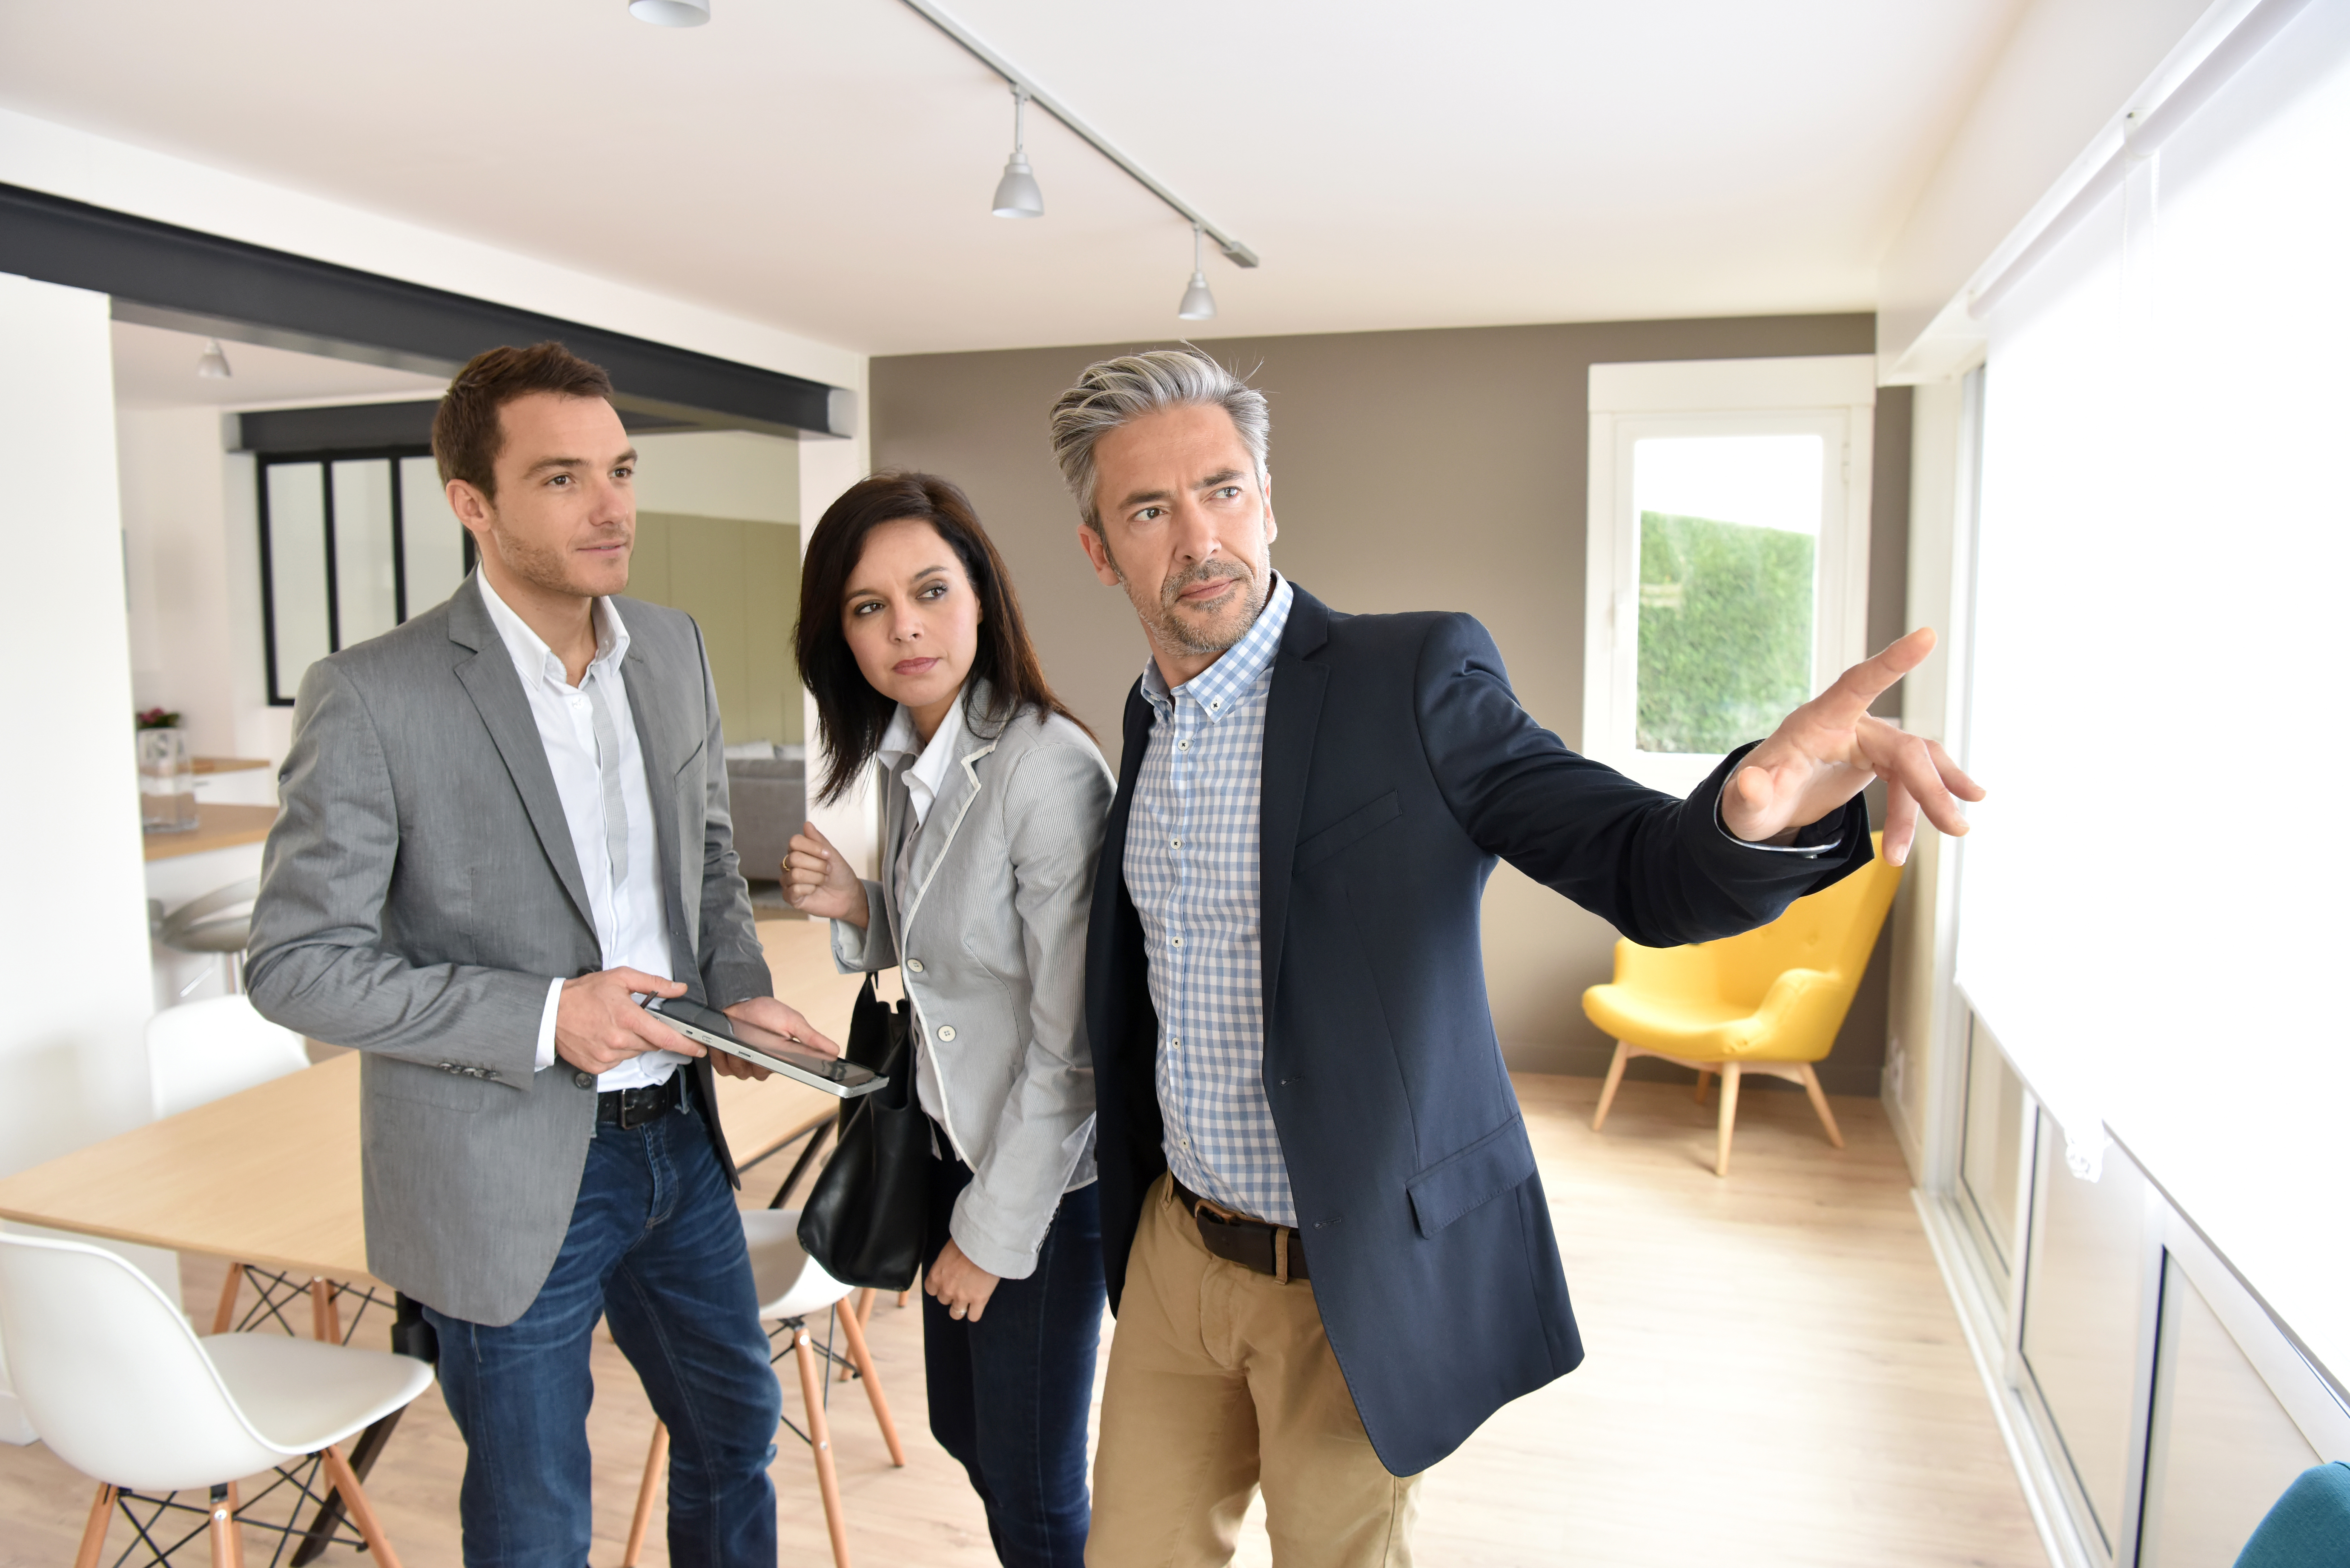 Comment bien guider un acheteur en tant que conseiller immobilier ?